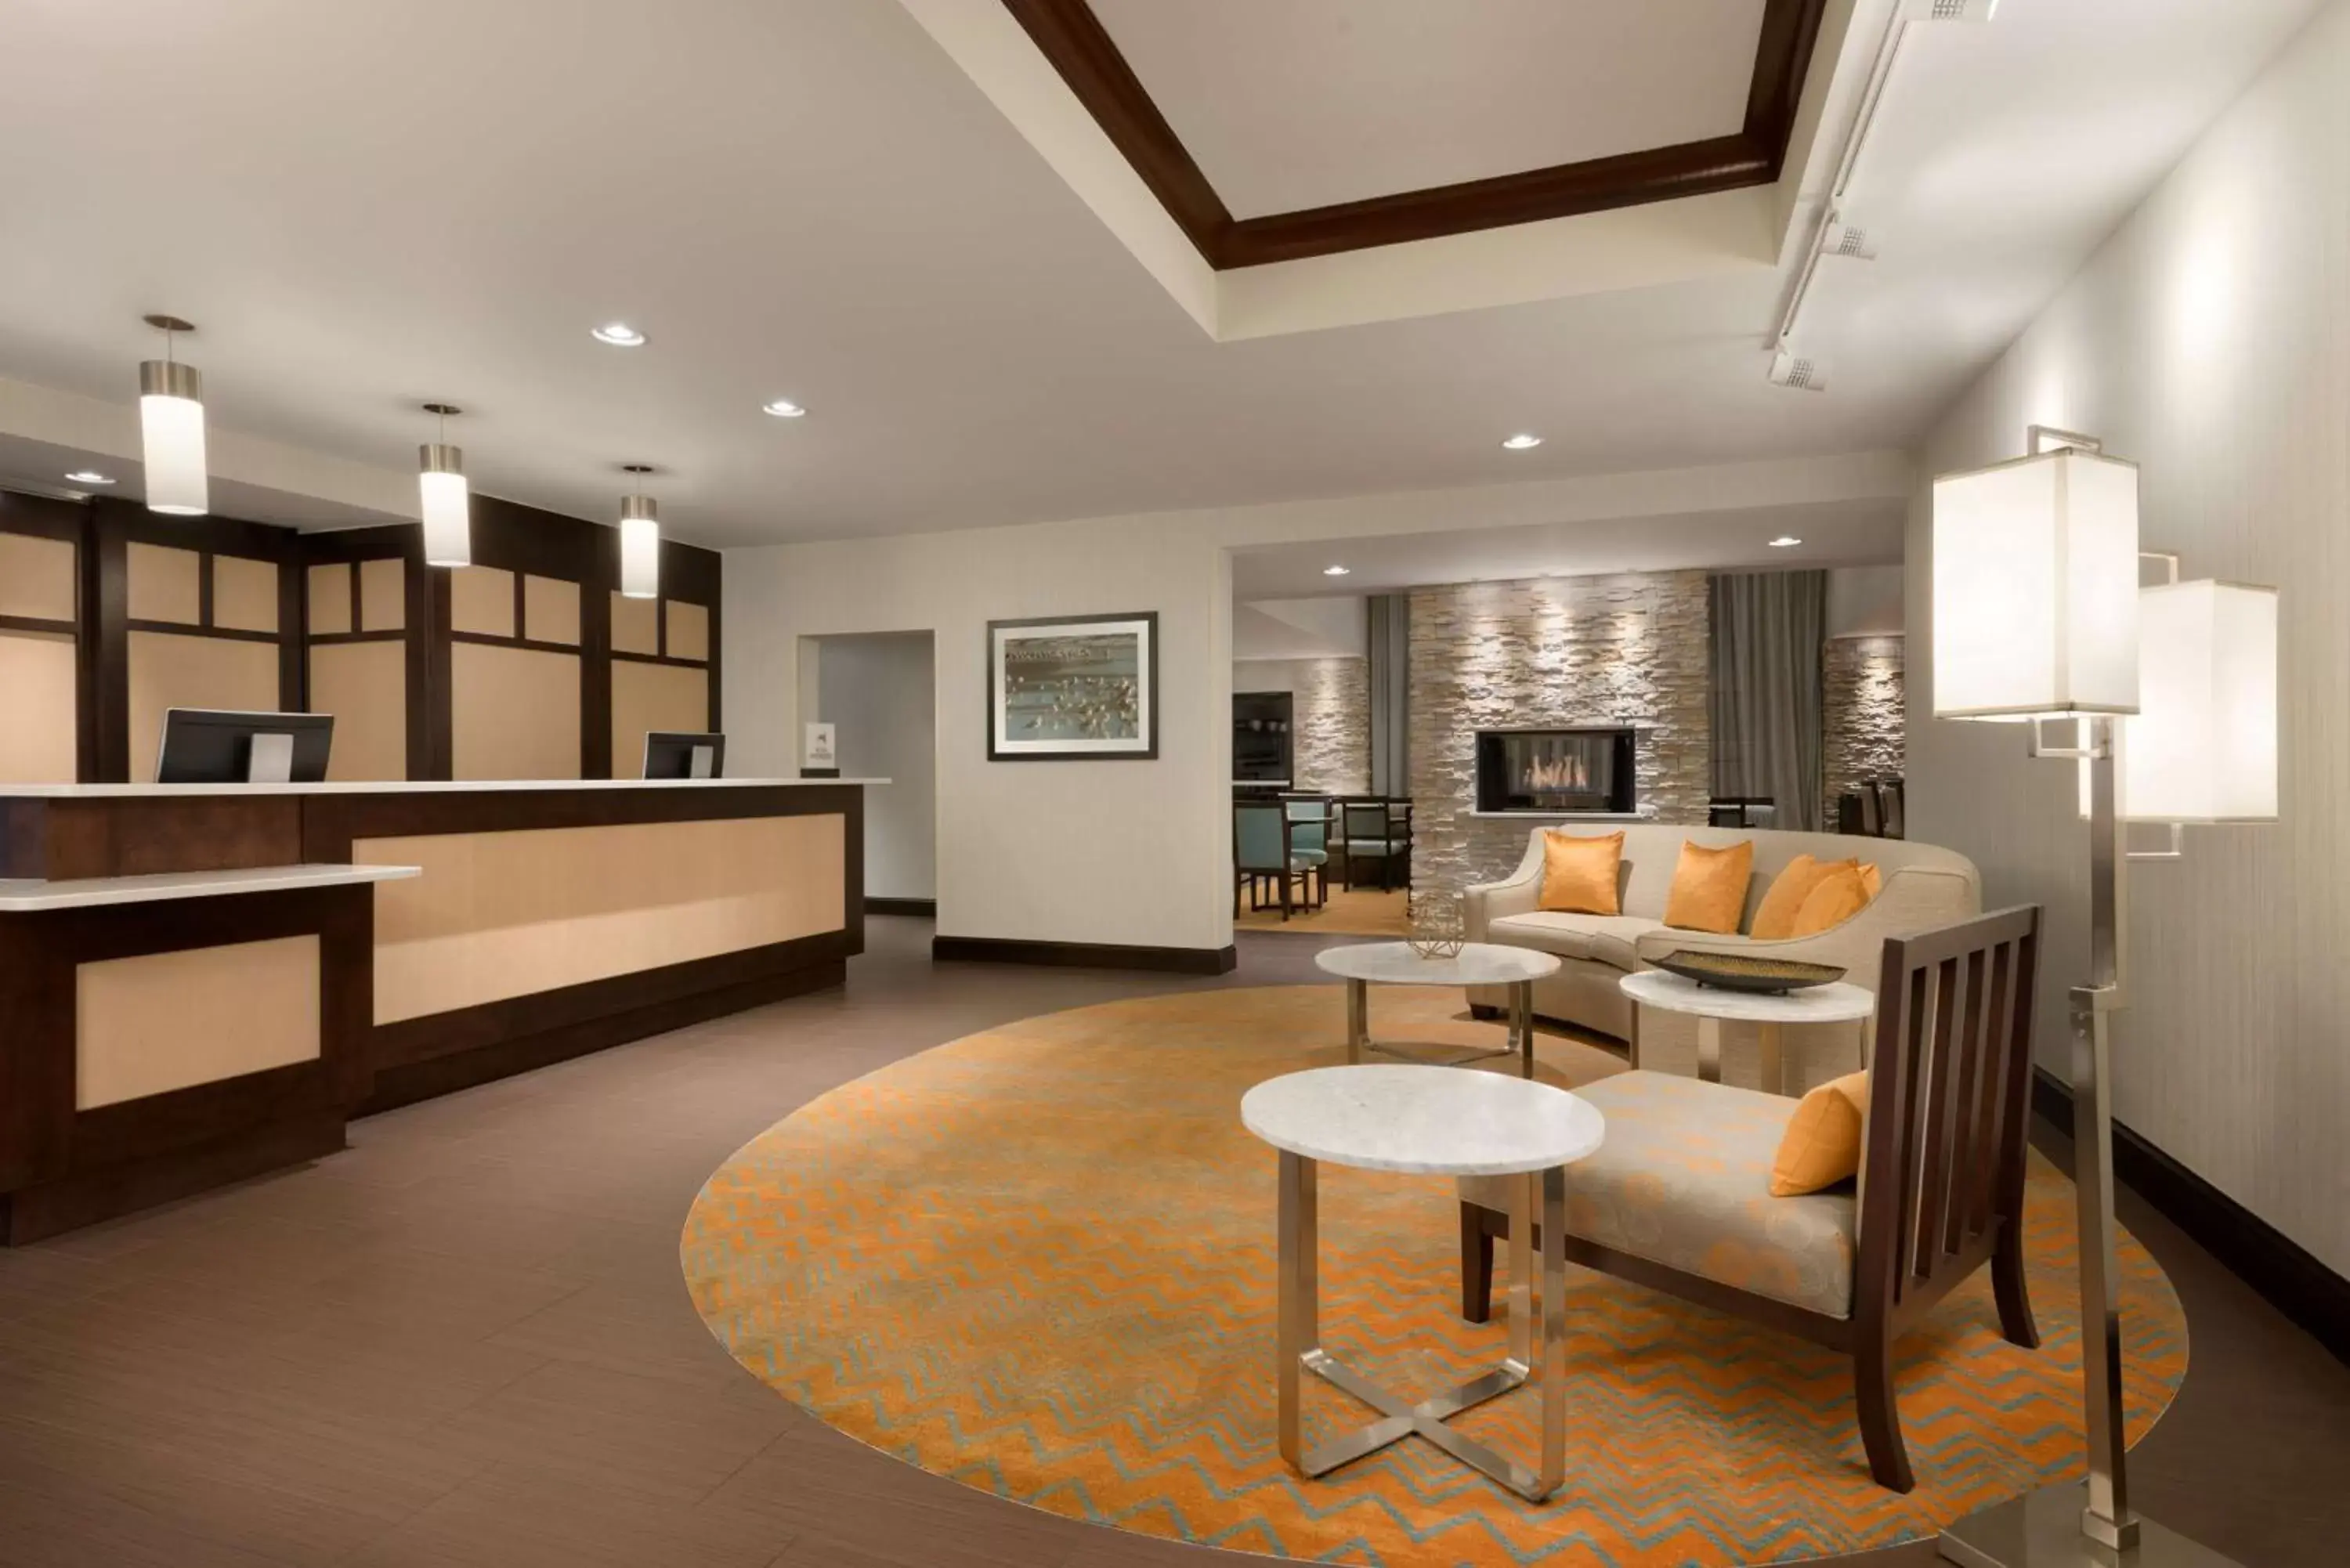 Lobby or reception in Homewood Suites Jacksonville Deerwood Park